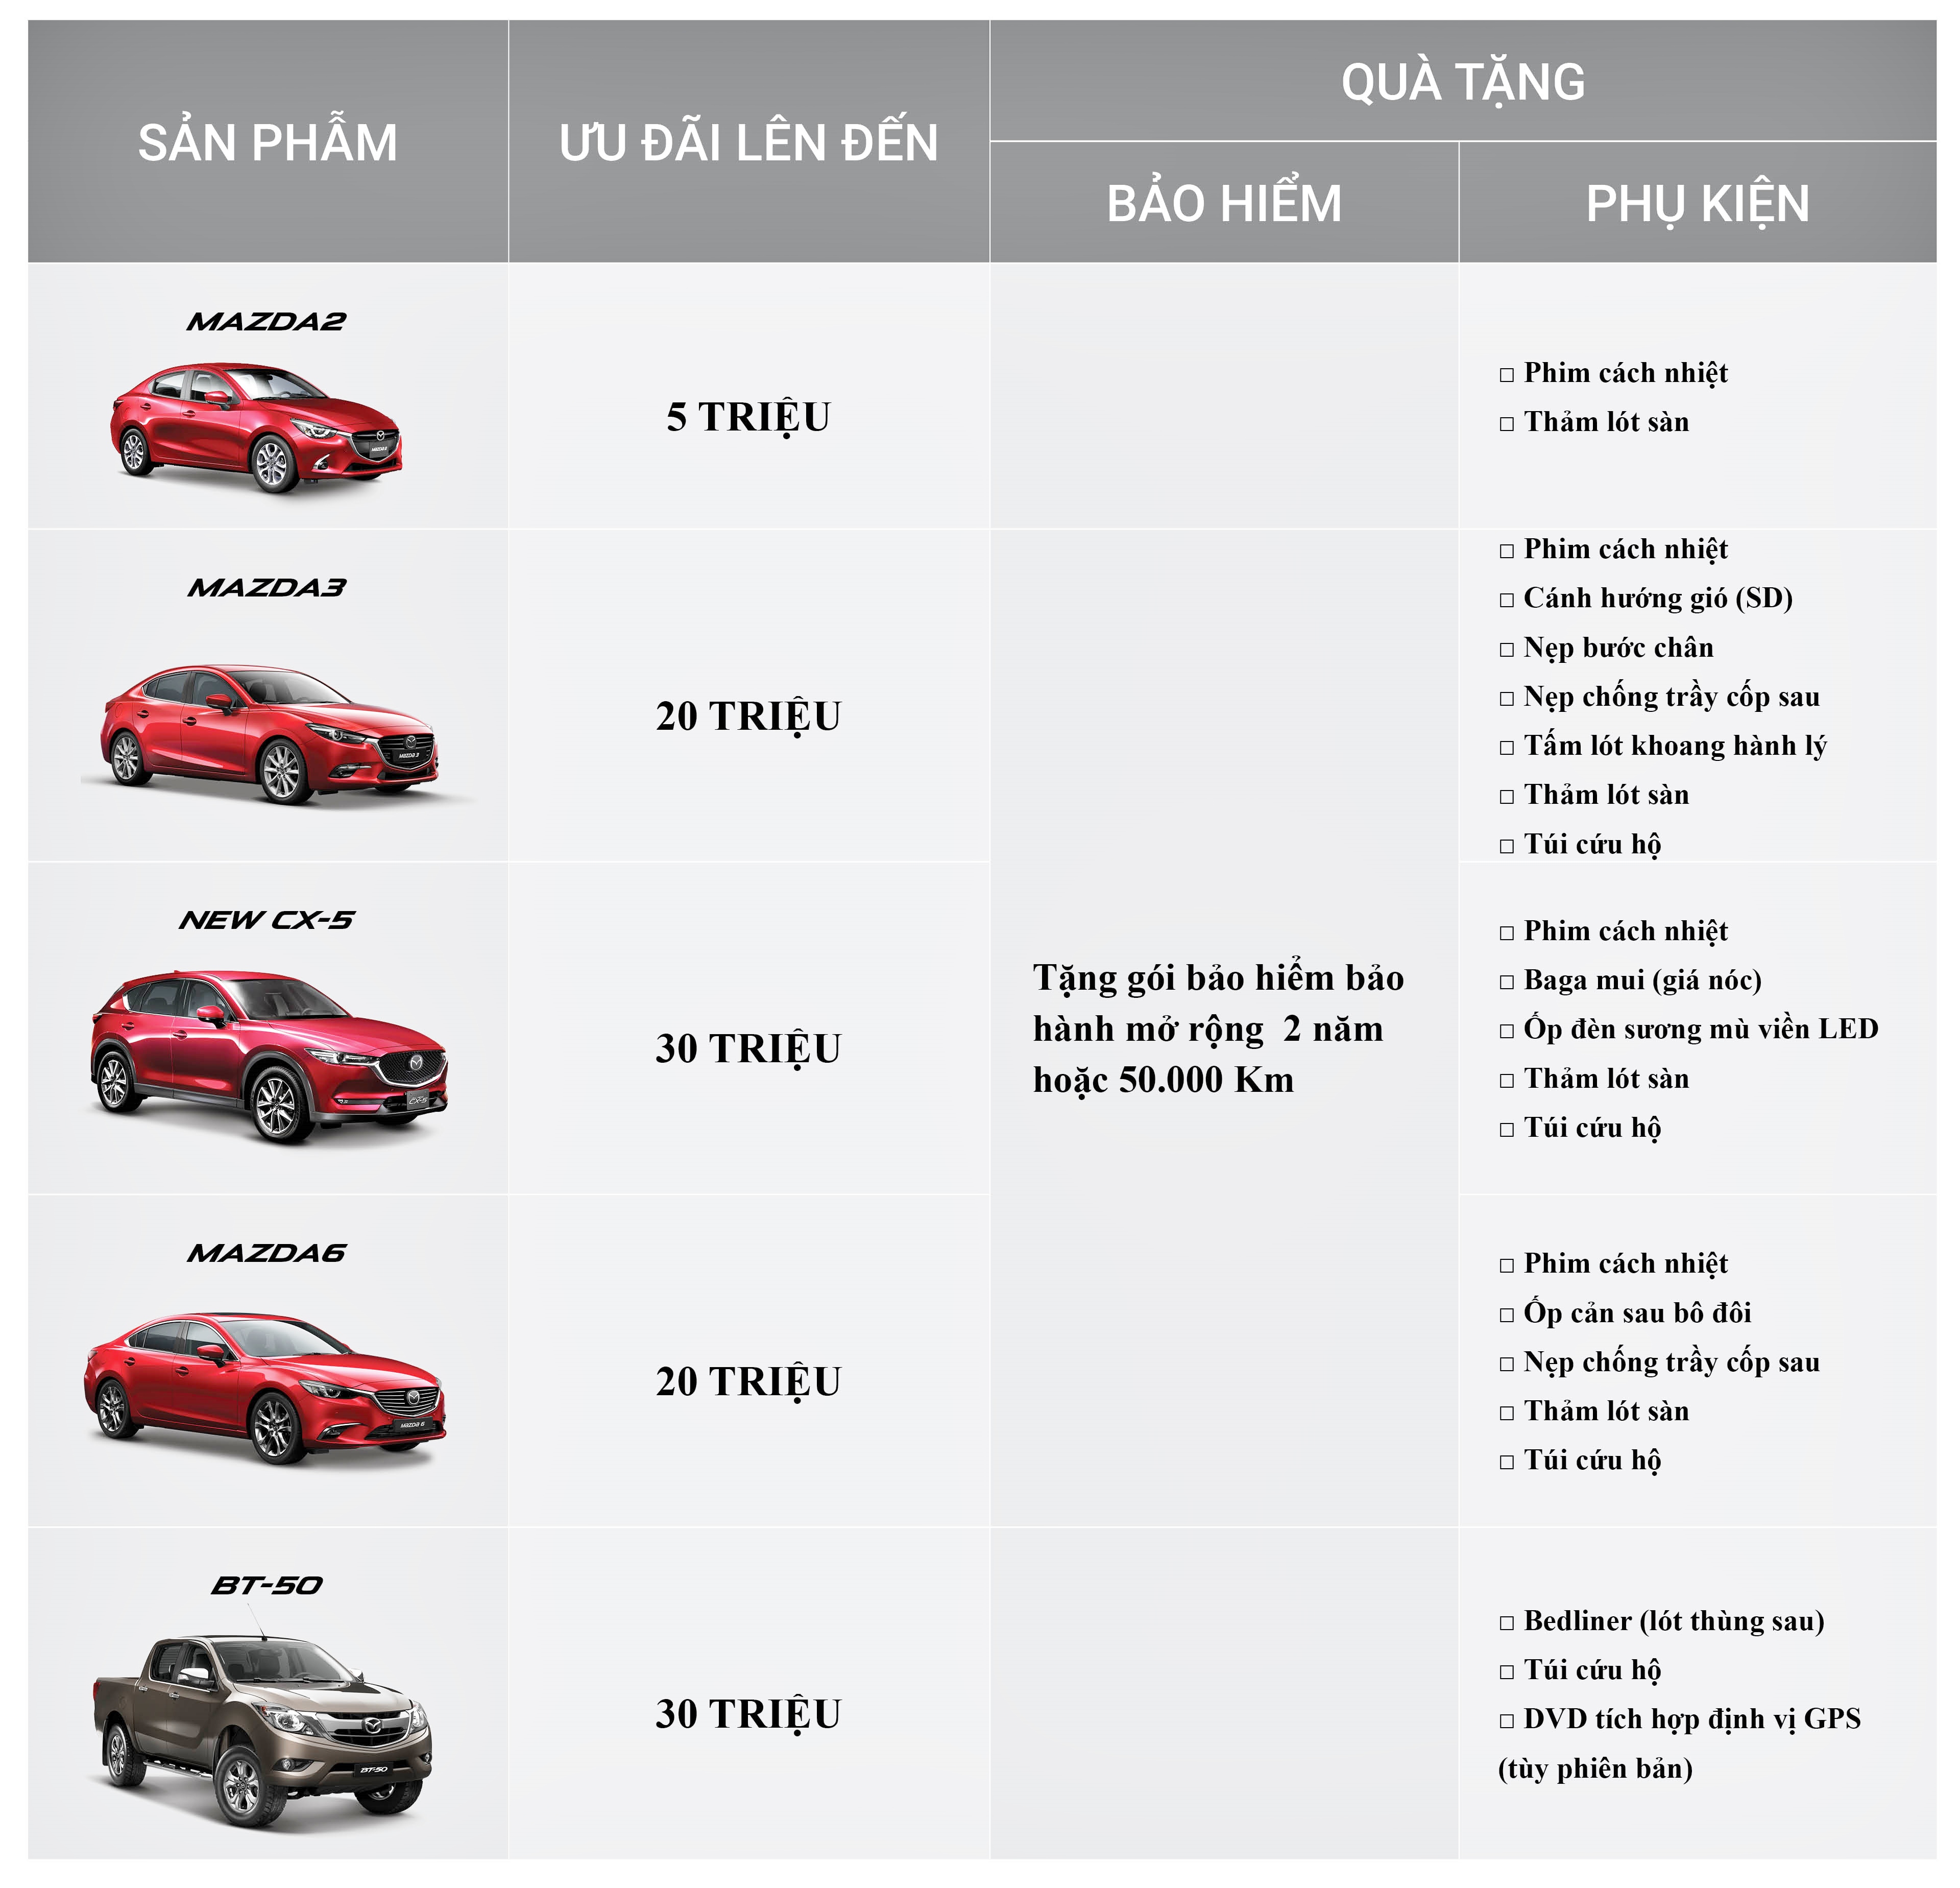 Cac-hang-o-to-khuyen-mai-cuoi-nam-2018-Mazda-anh-3